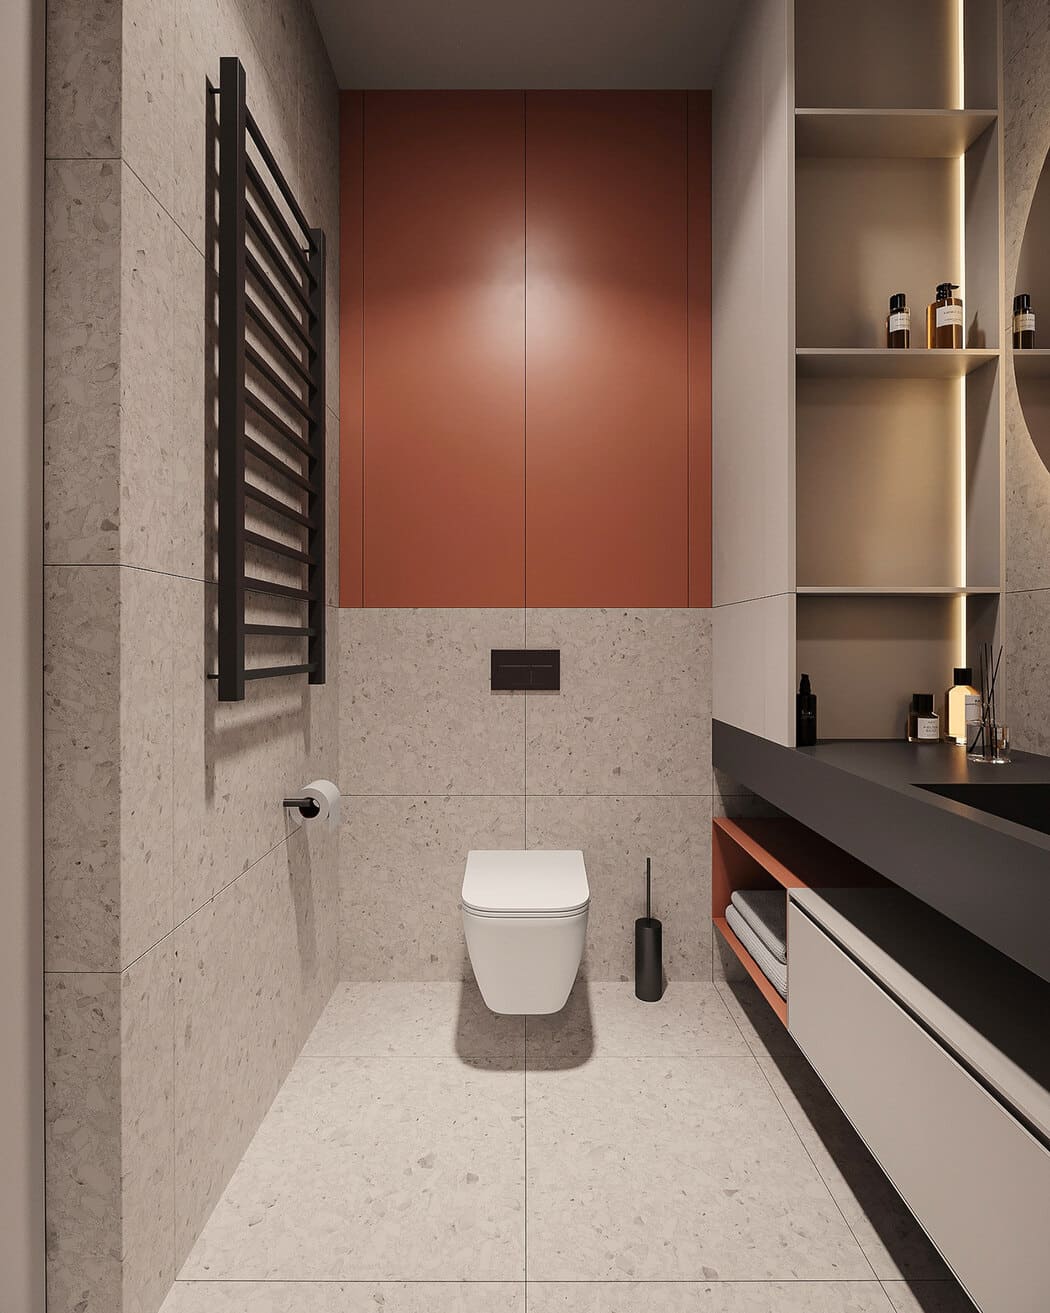 Минималистичная квартира с контрастными акцентами в стиле минимализма, ванная, фото 6